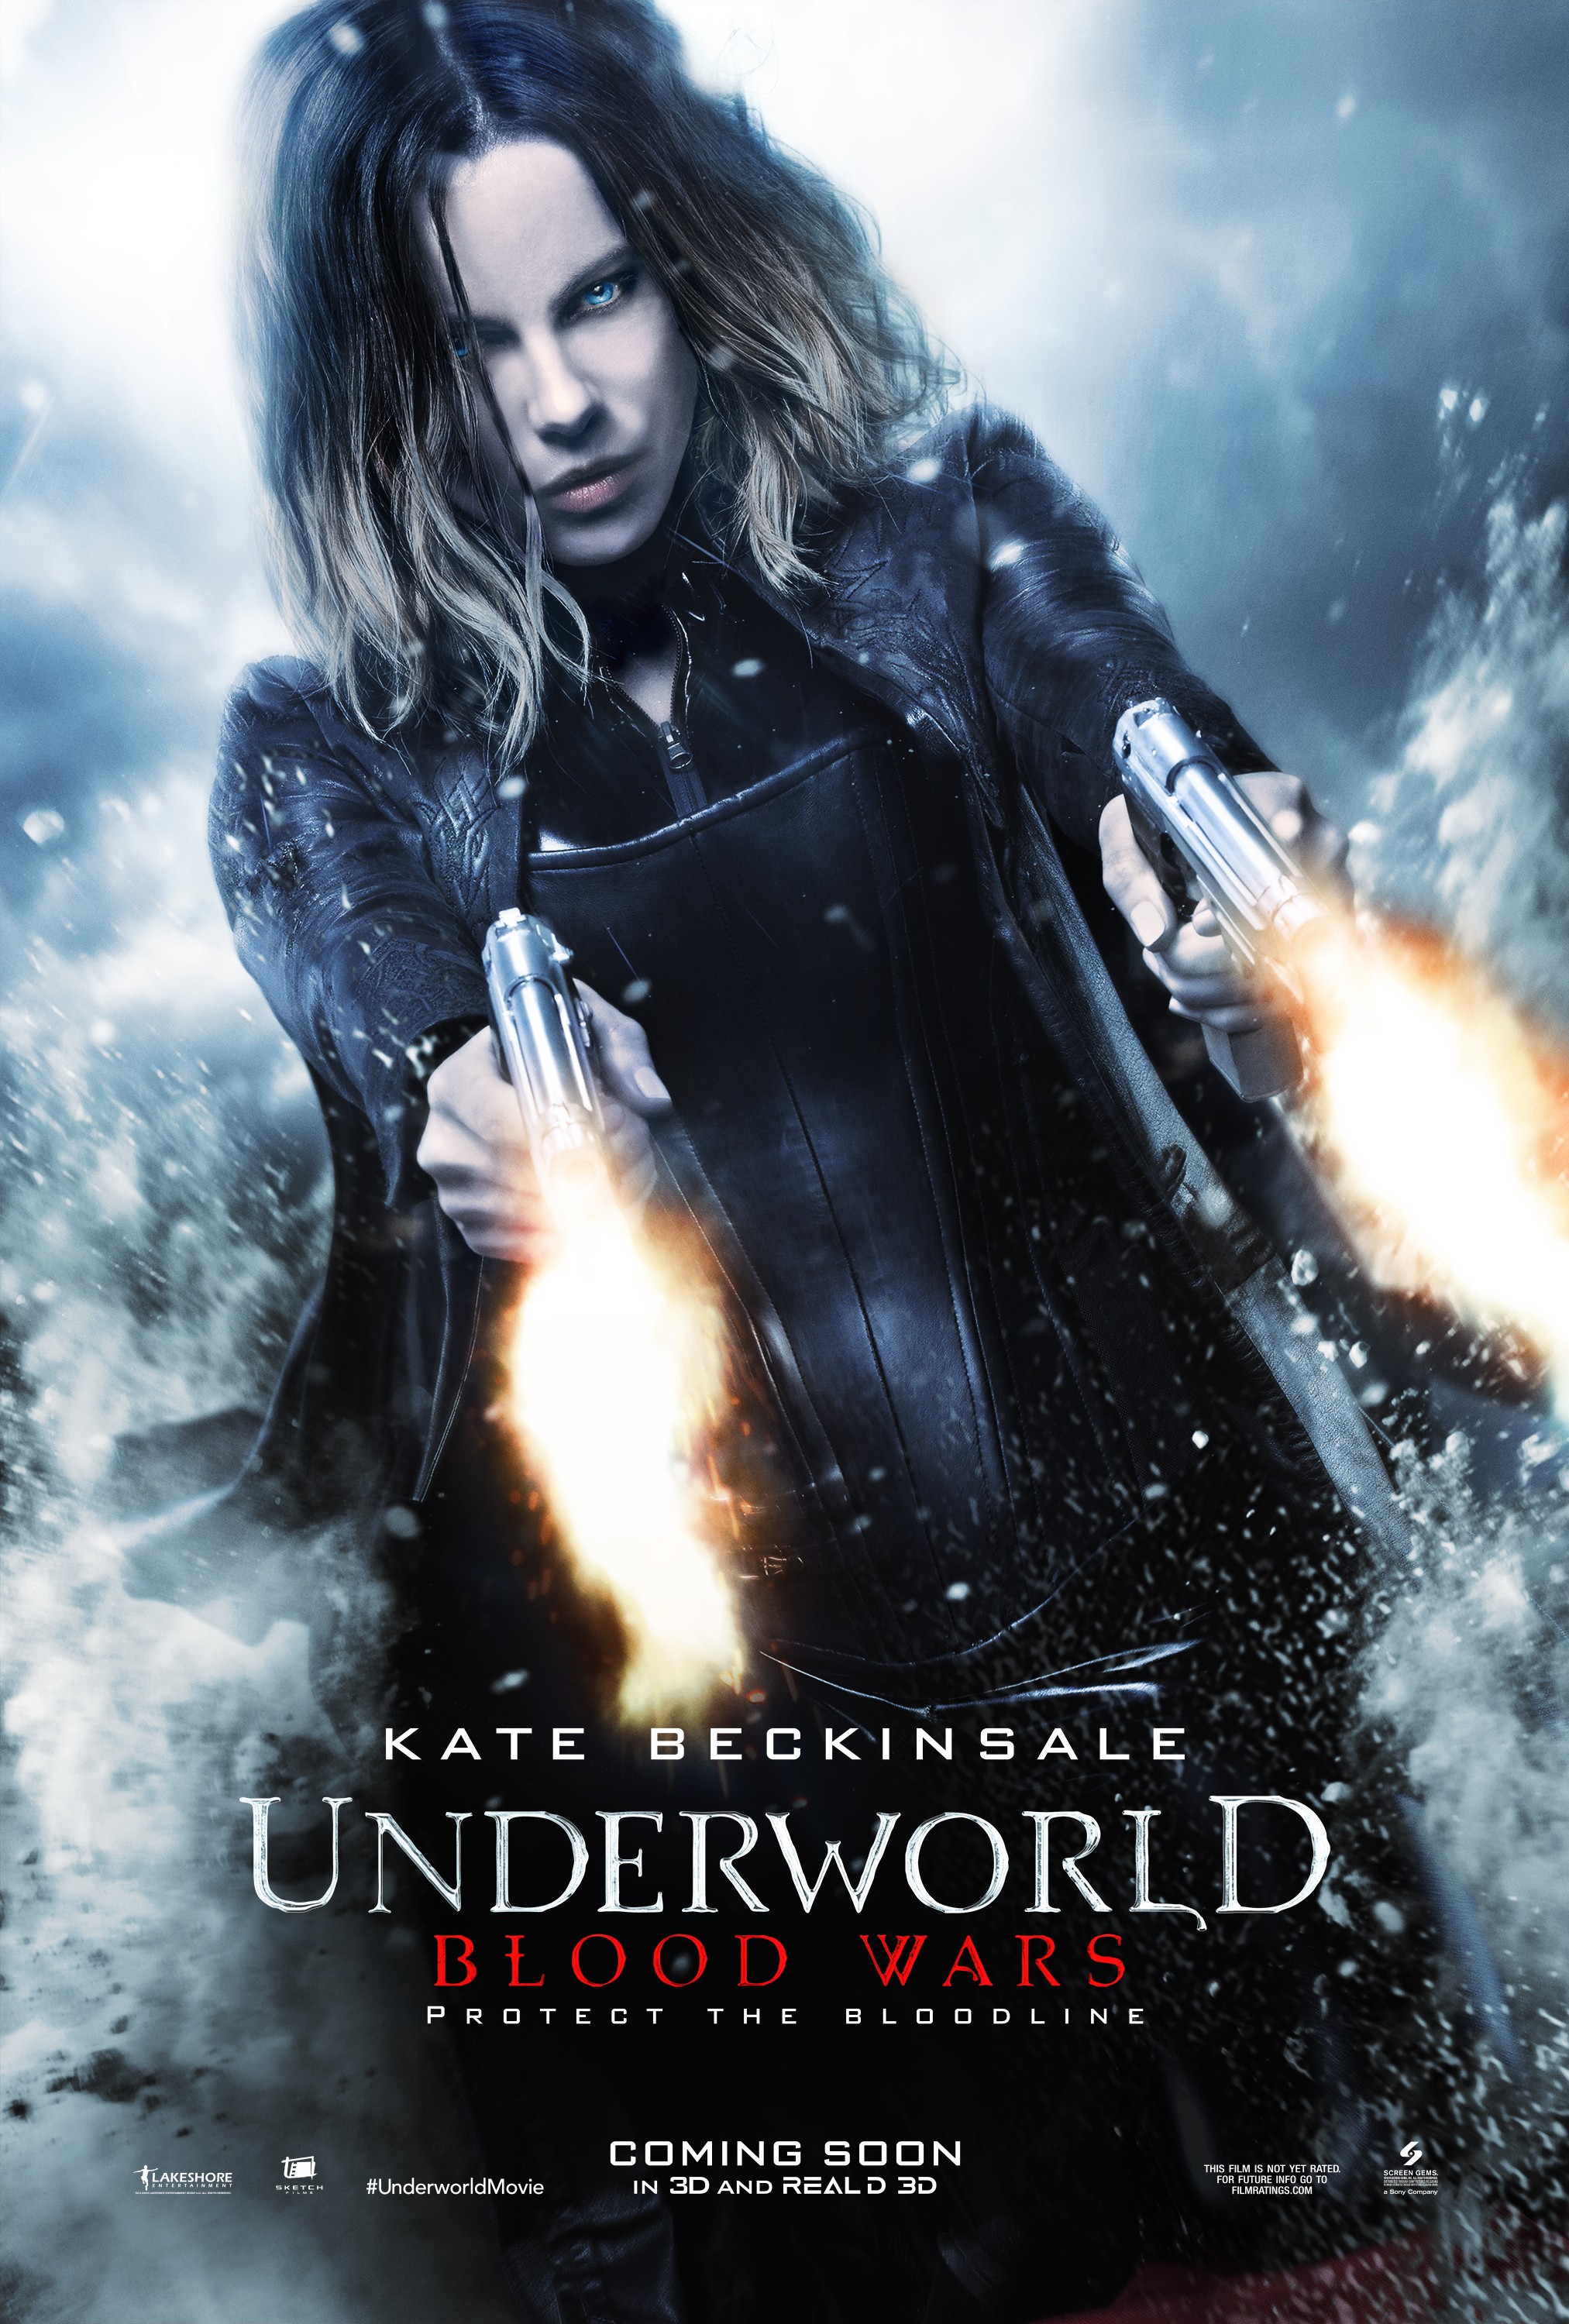 Kate Beckinsale UNDERWORLD 2 Action Movie Film Vampires Werewolf Picture Poster